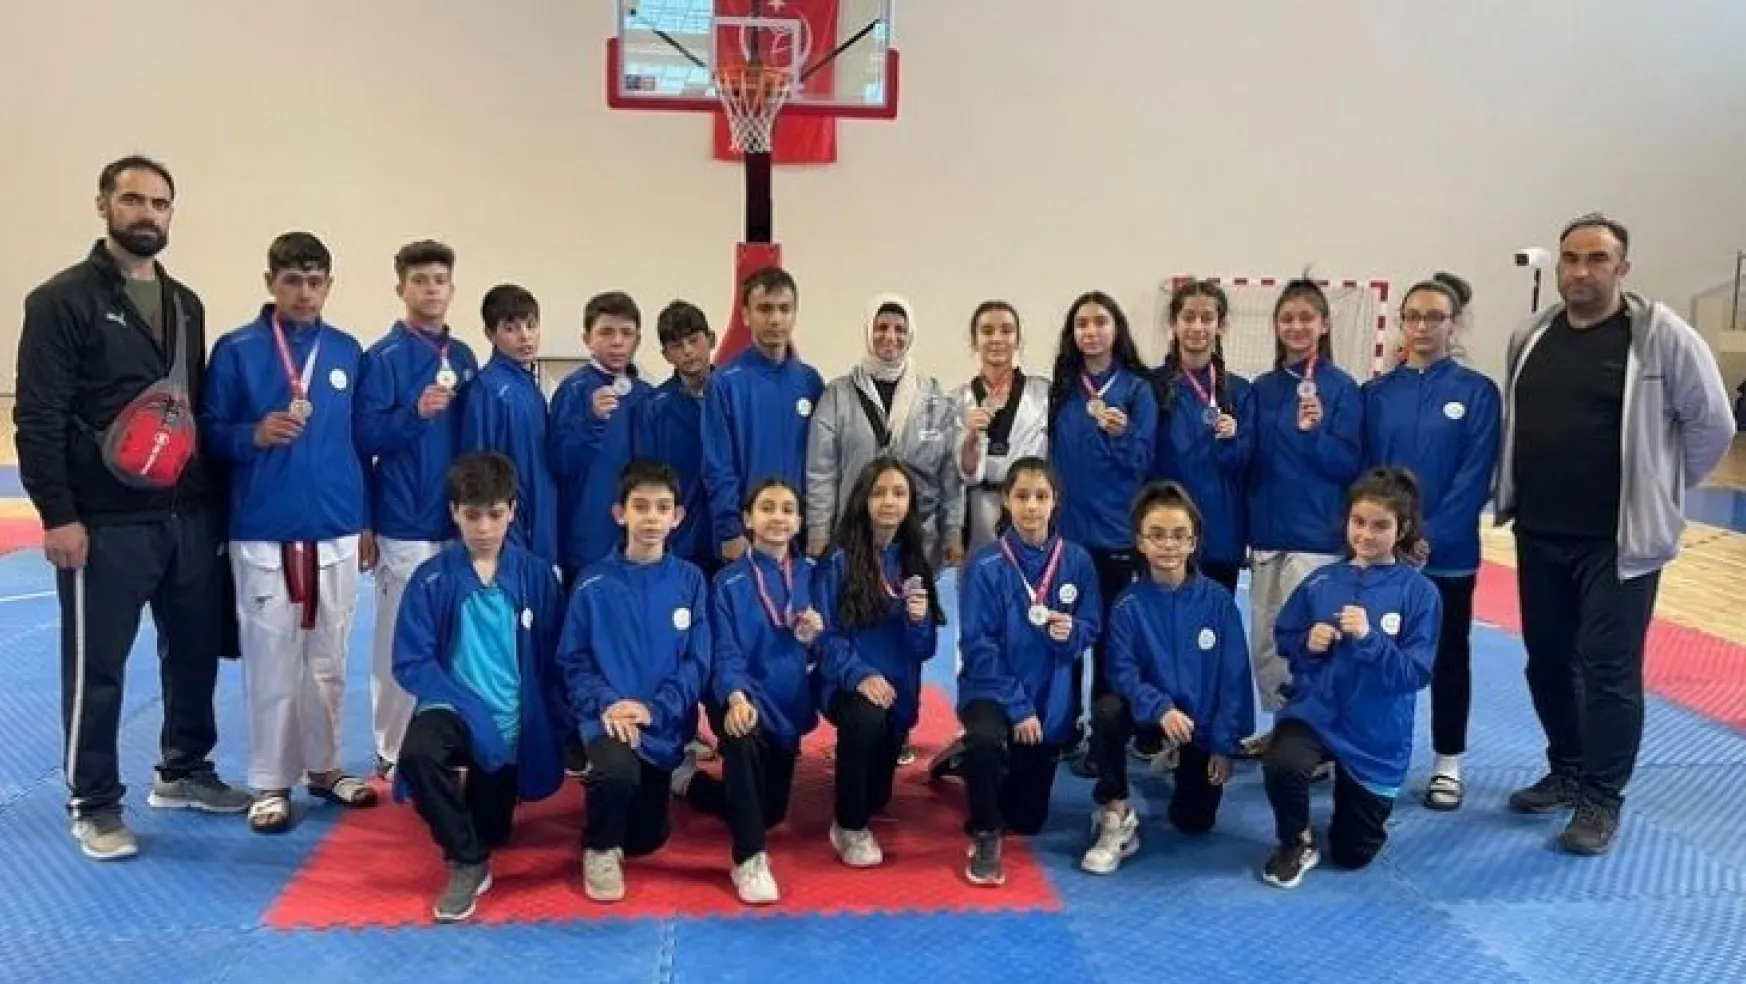 Analig Kayseri Taekwondo takımı yarı finale yükseldi